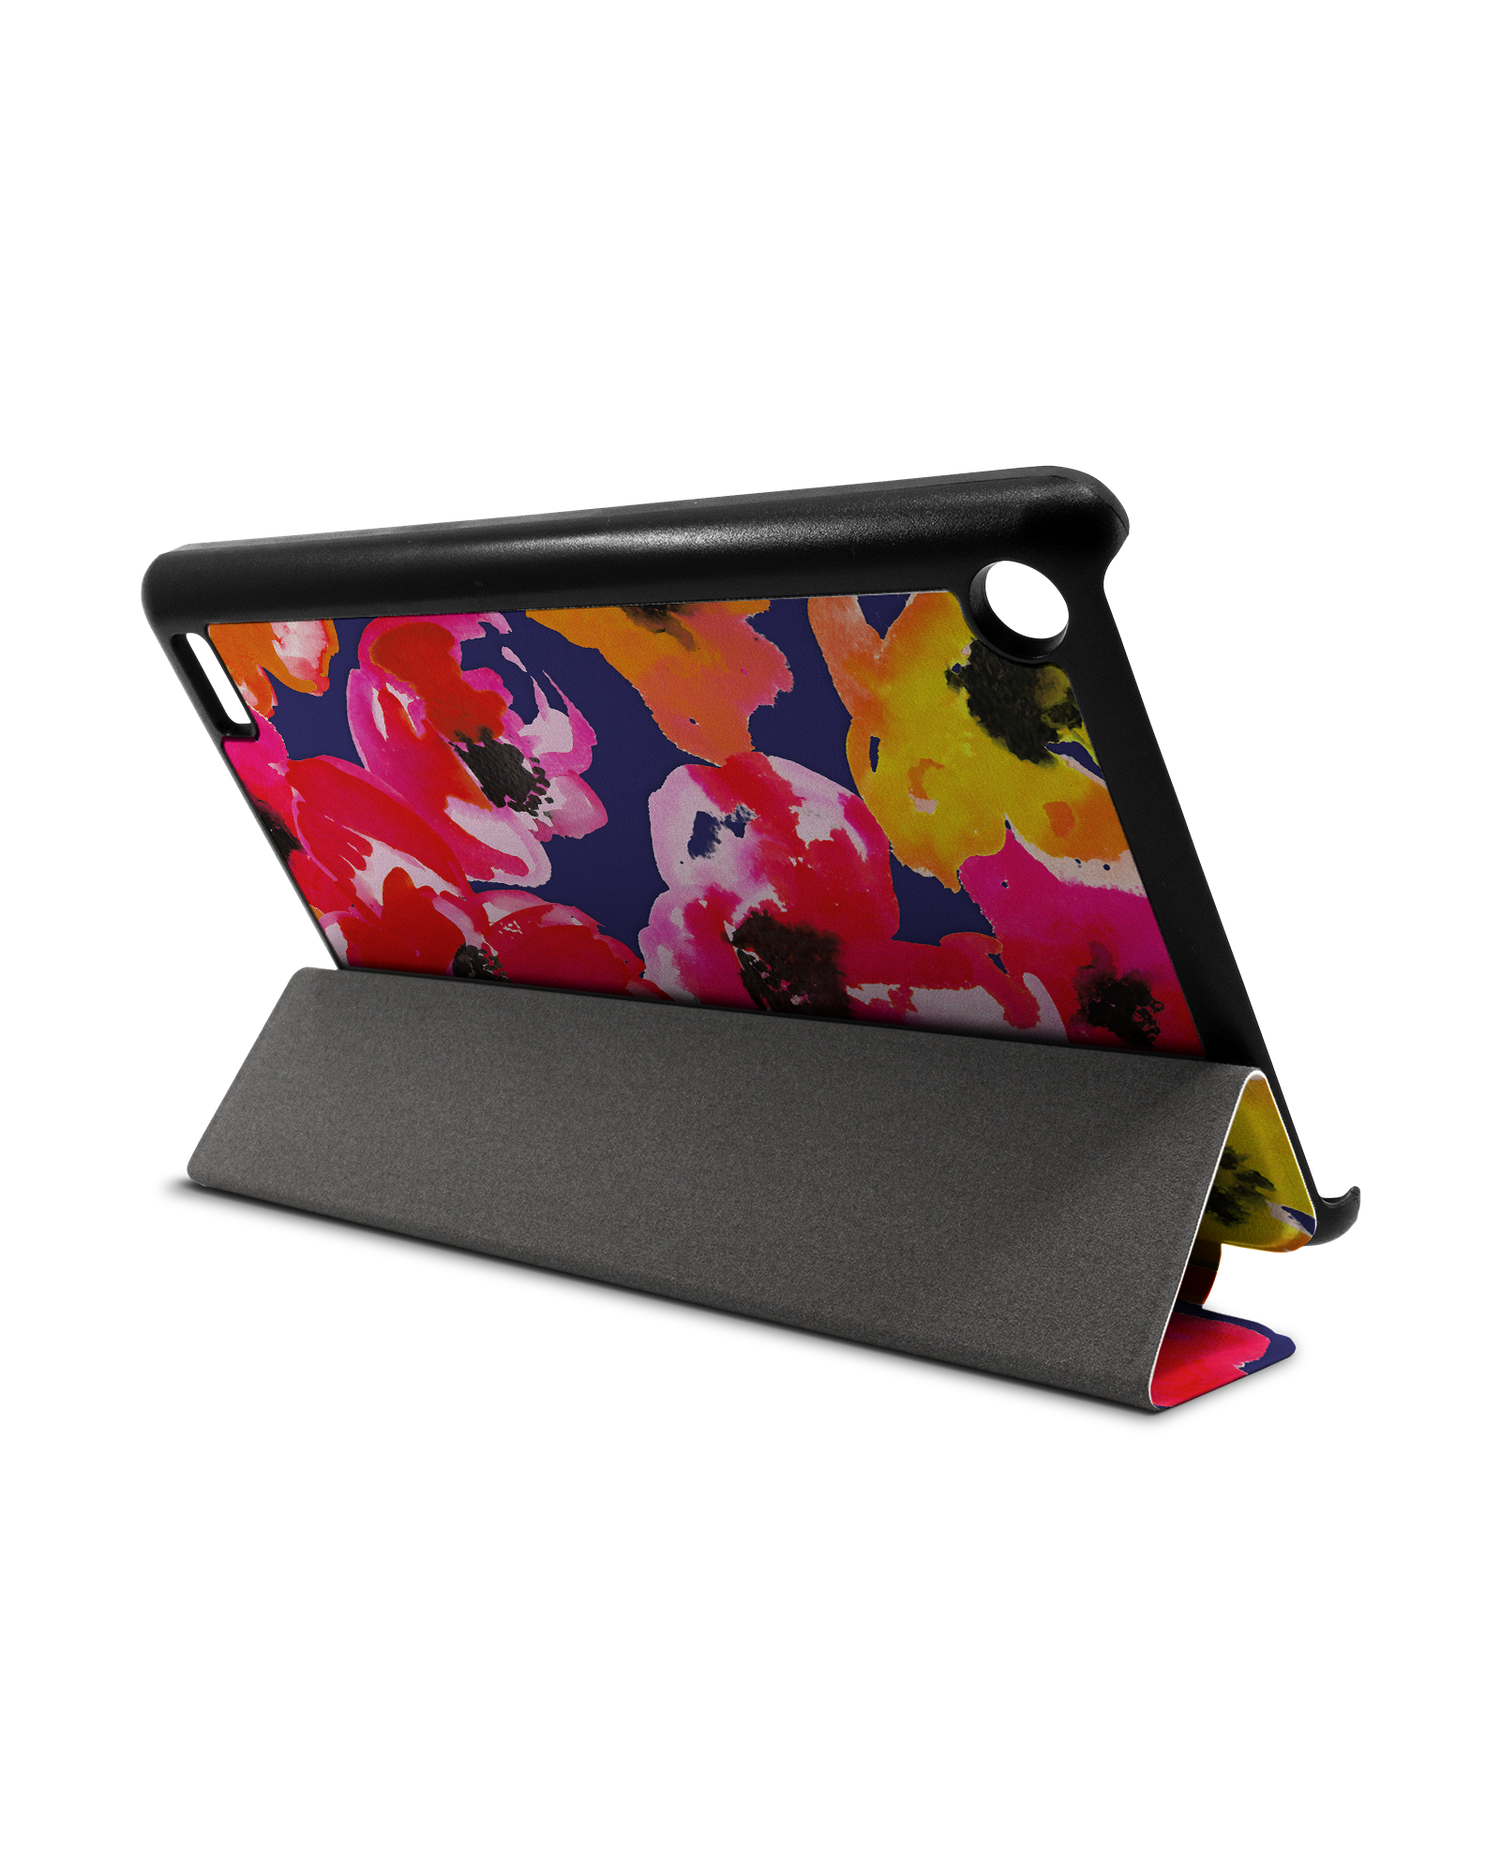 Painted Poppies Tablet Smart Case für Amazon Fire 7: Aufgestellt im Querformat